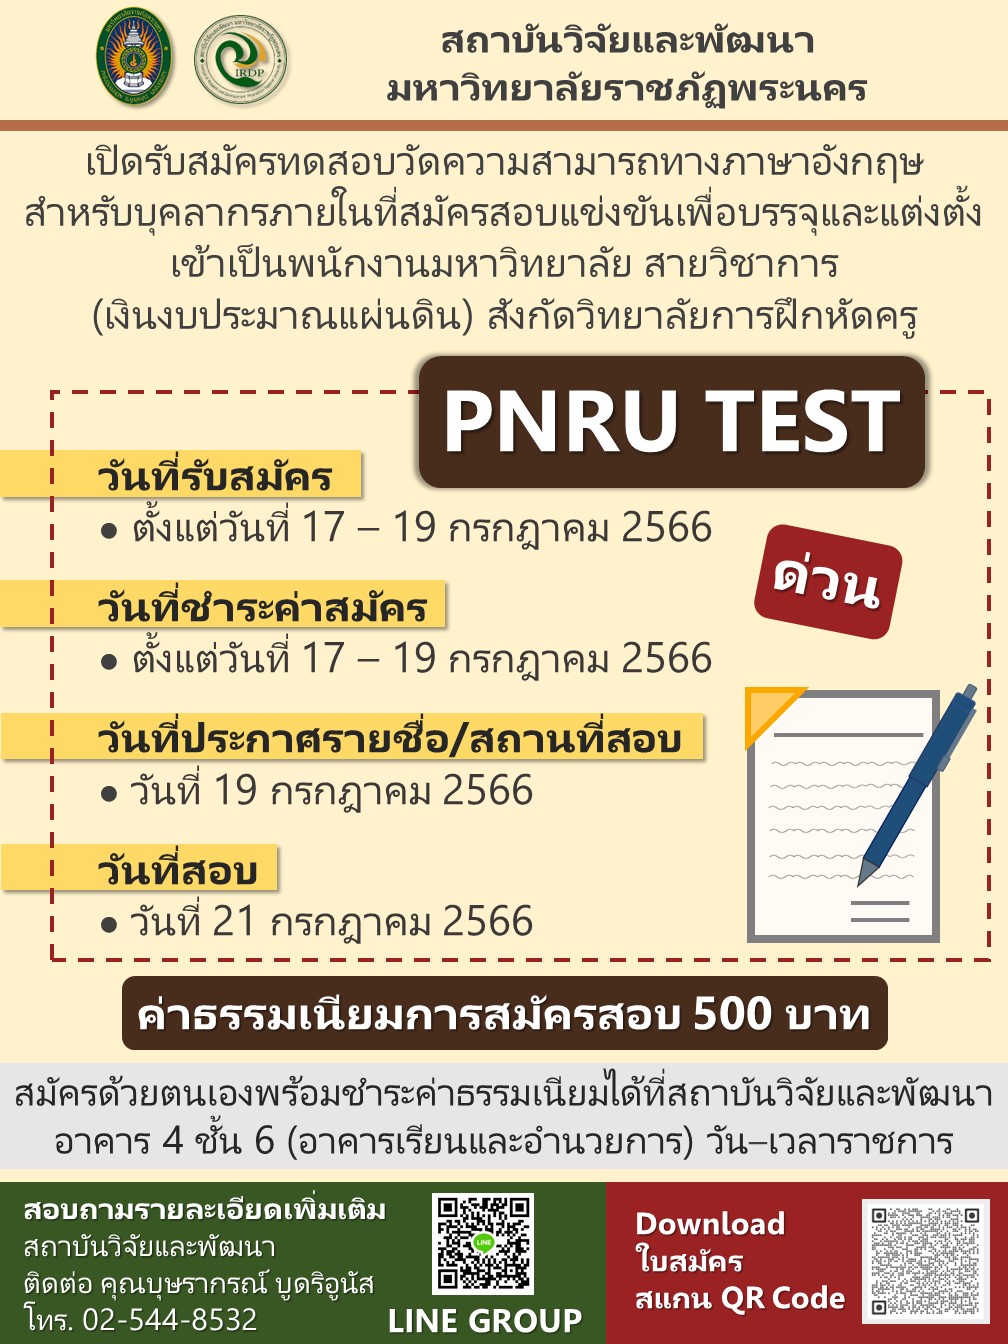 ประกาศรับสมัครทดสอบวัดความสามารถทางภาษาอังกฤษ (PNRU TEST) สำหรับบุคลากรภายใน